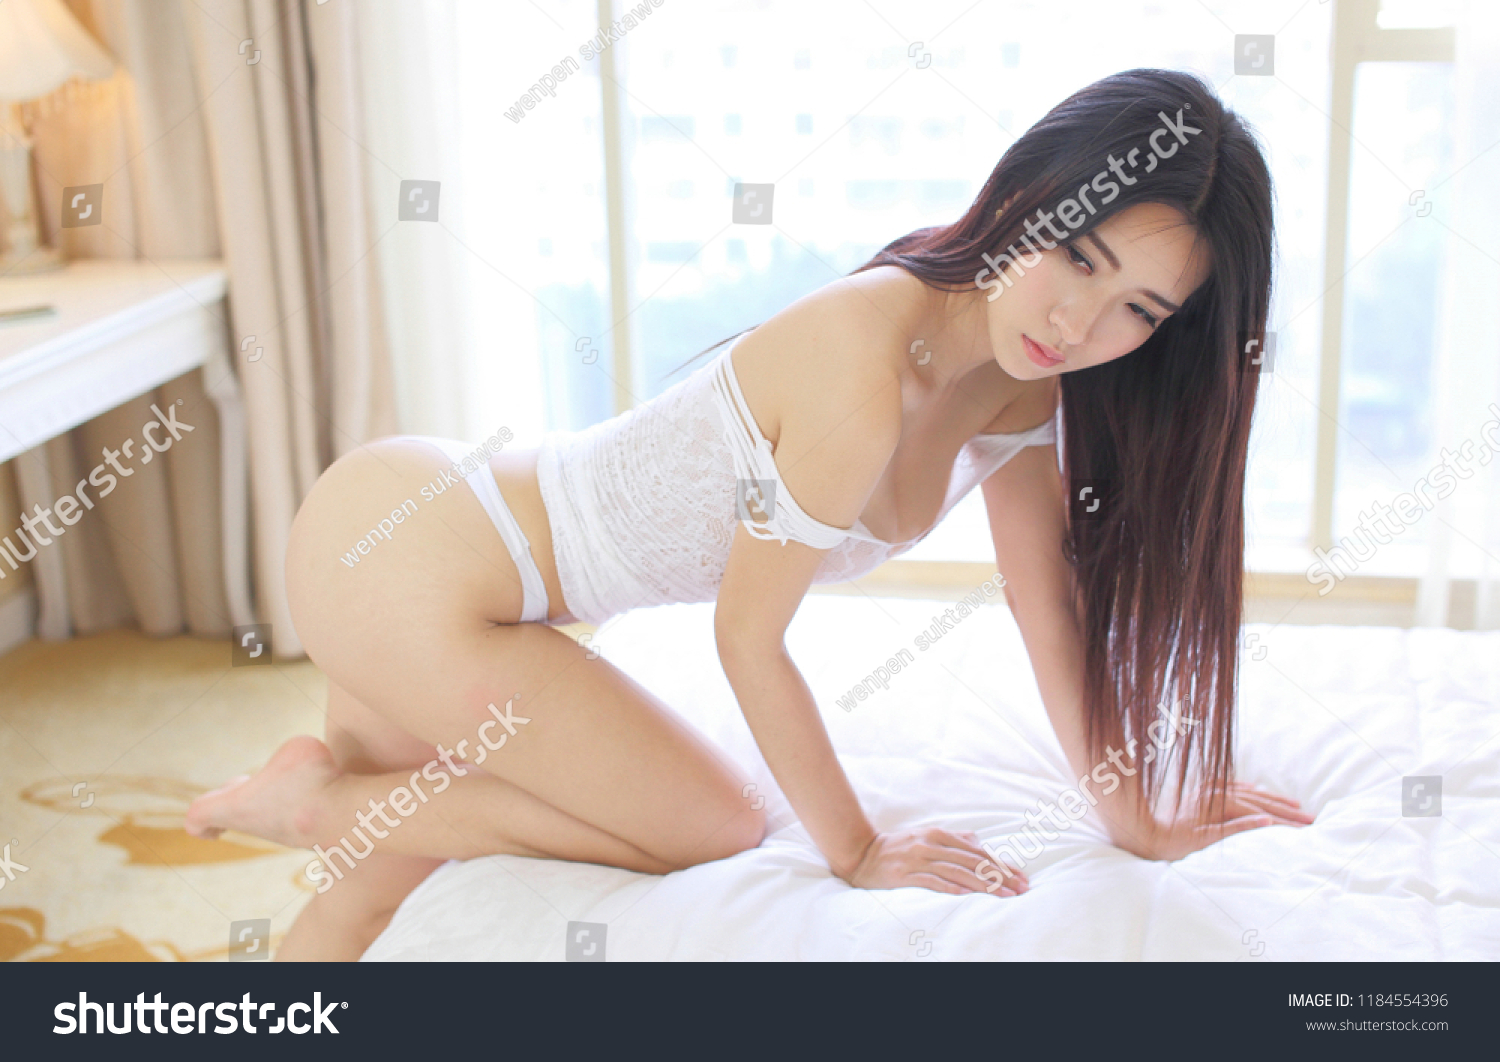 Hot Asian Girls Sex Pics